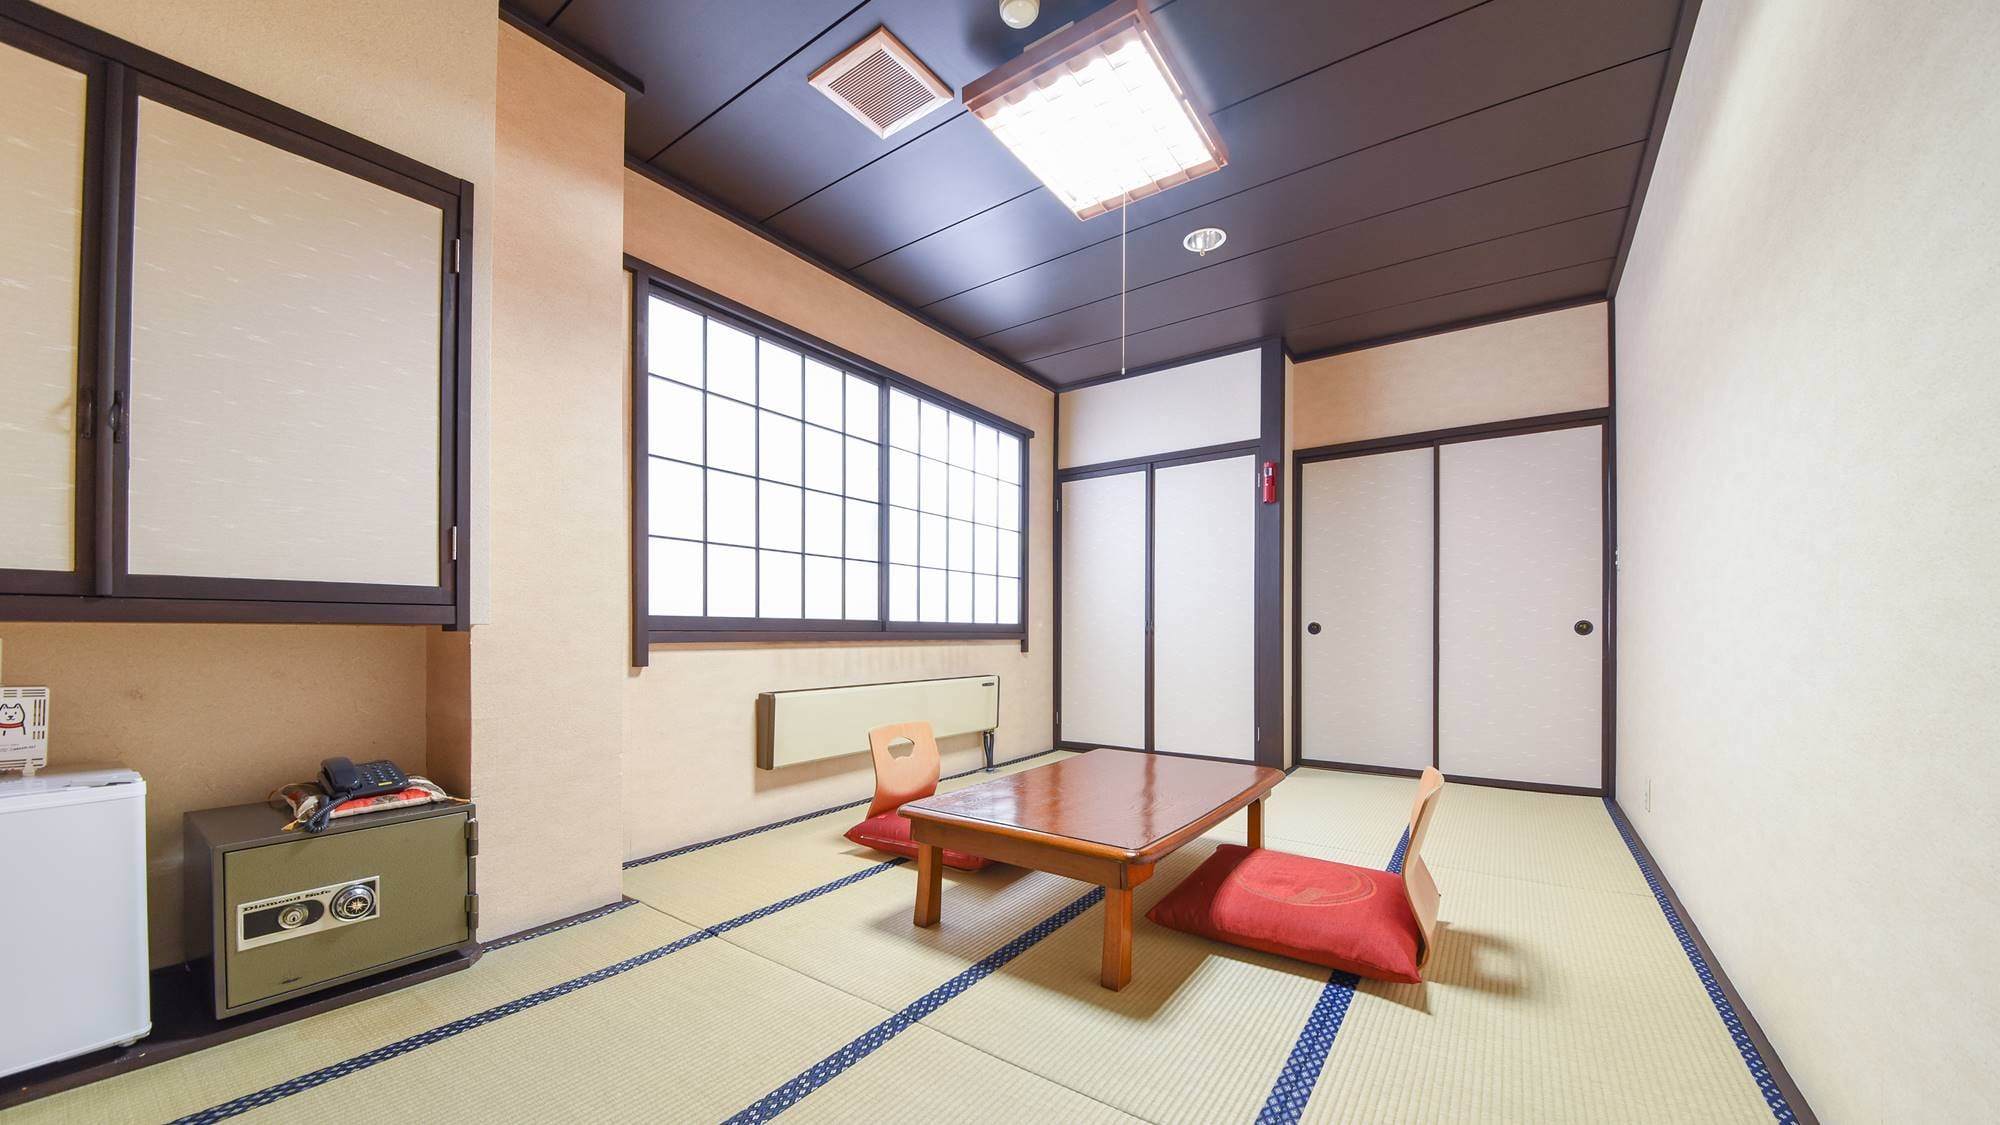 * ห้องสไตล์ญี่ปุ่น 8-10 เสื่อทาทามิ (ตัวอย่างห้องพัก) / กรุณาใช้เวลาพักผ่อนในห้องที่มีกลิ่นเสื่อทาทามิจาง ๆ